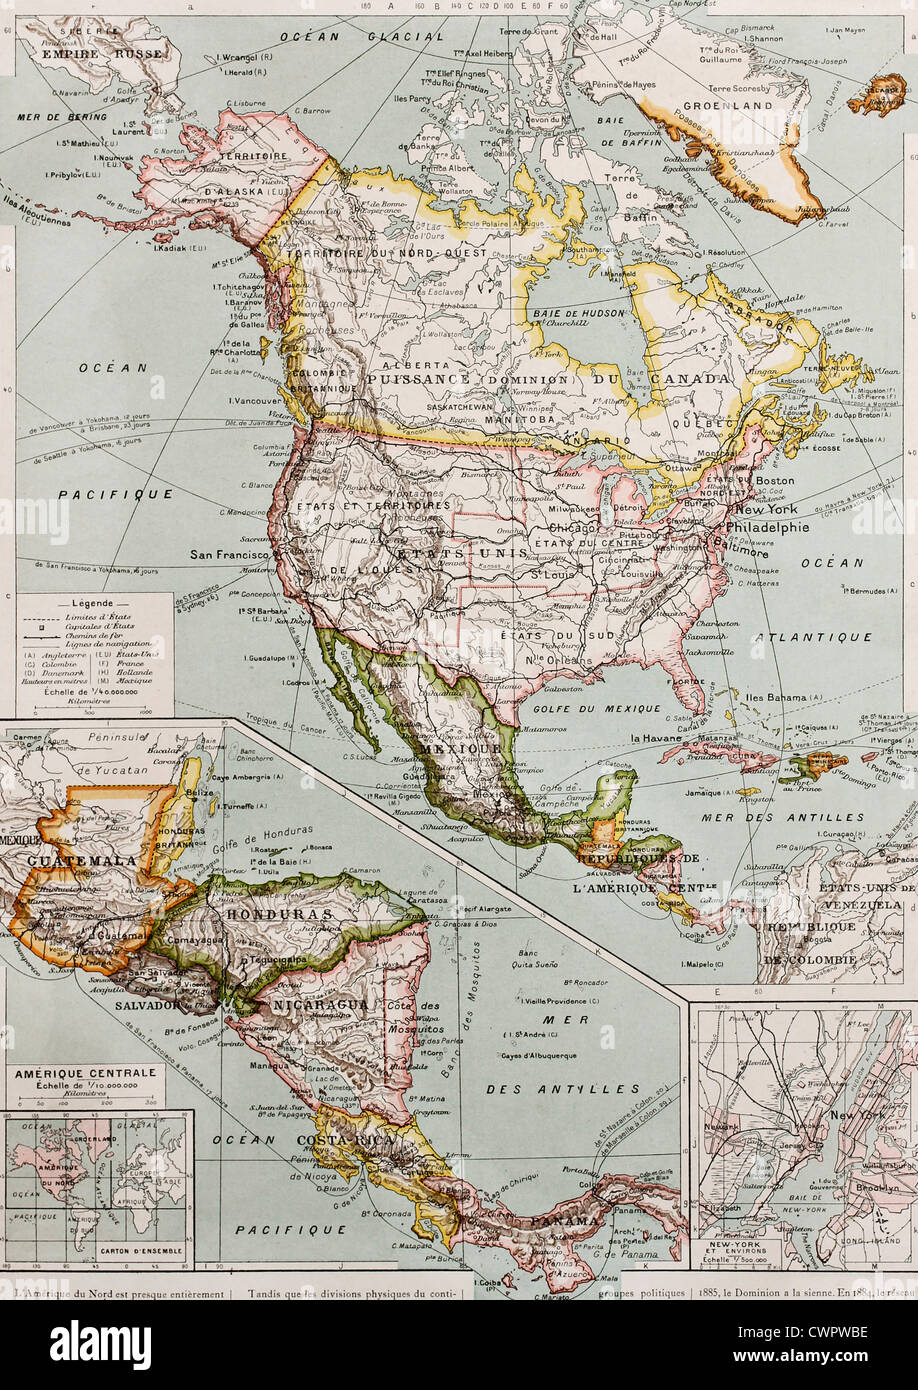 Norte y América Central mapa antiguo Foto de stock